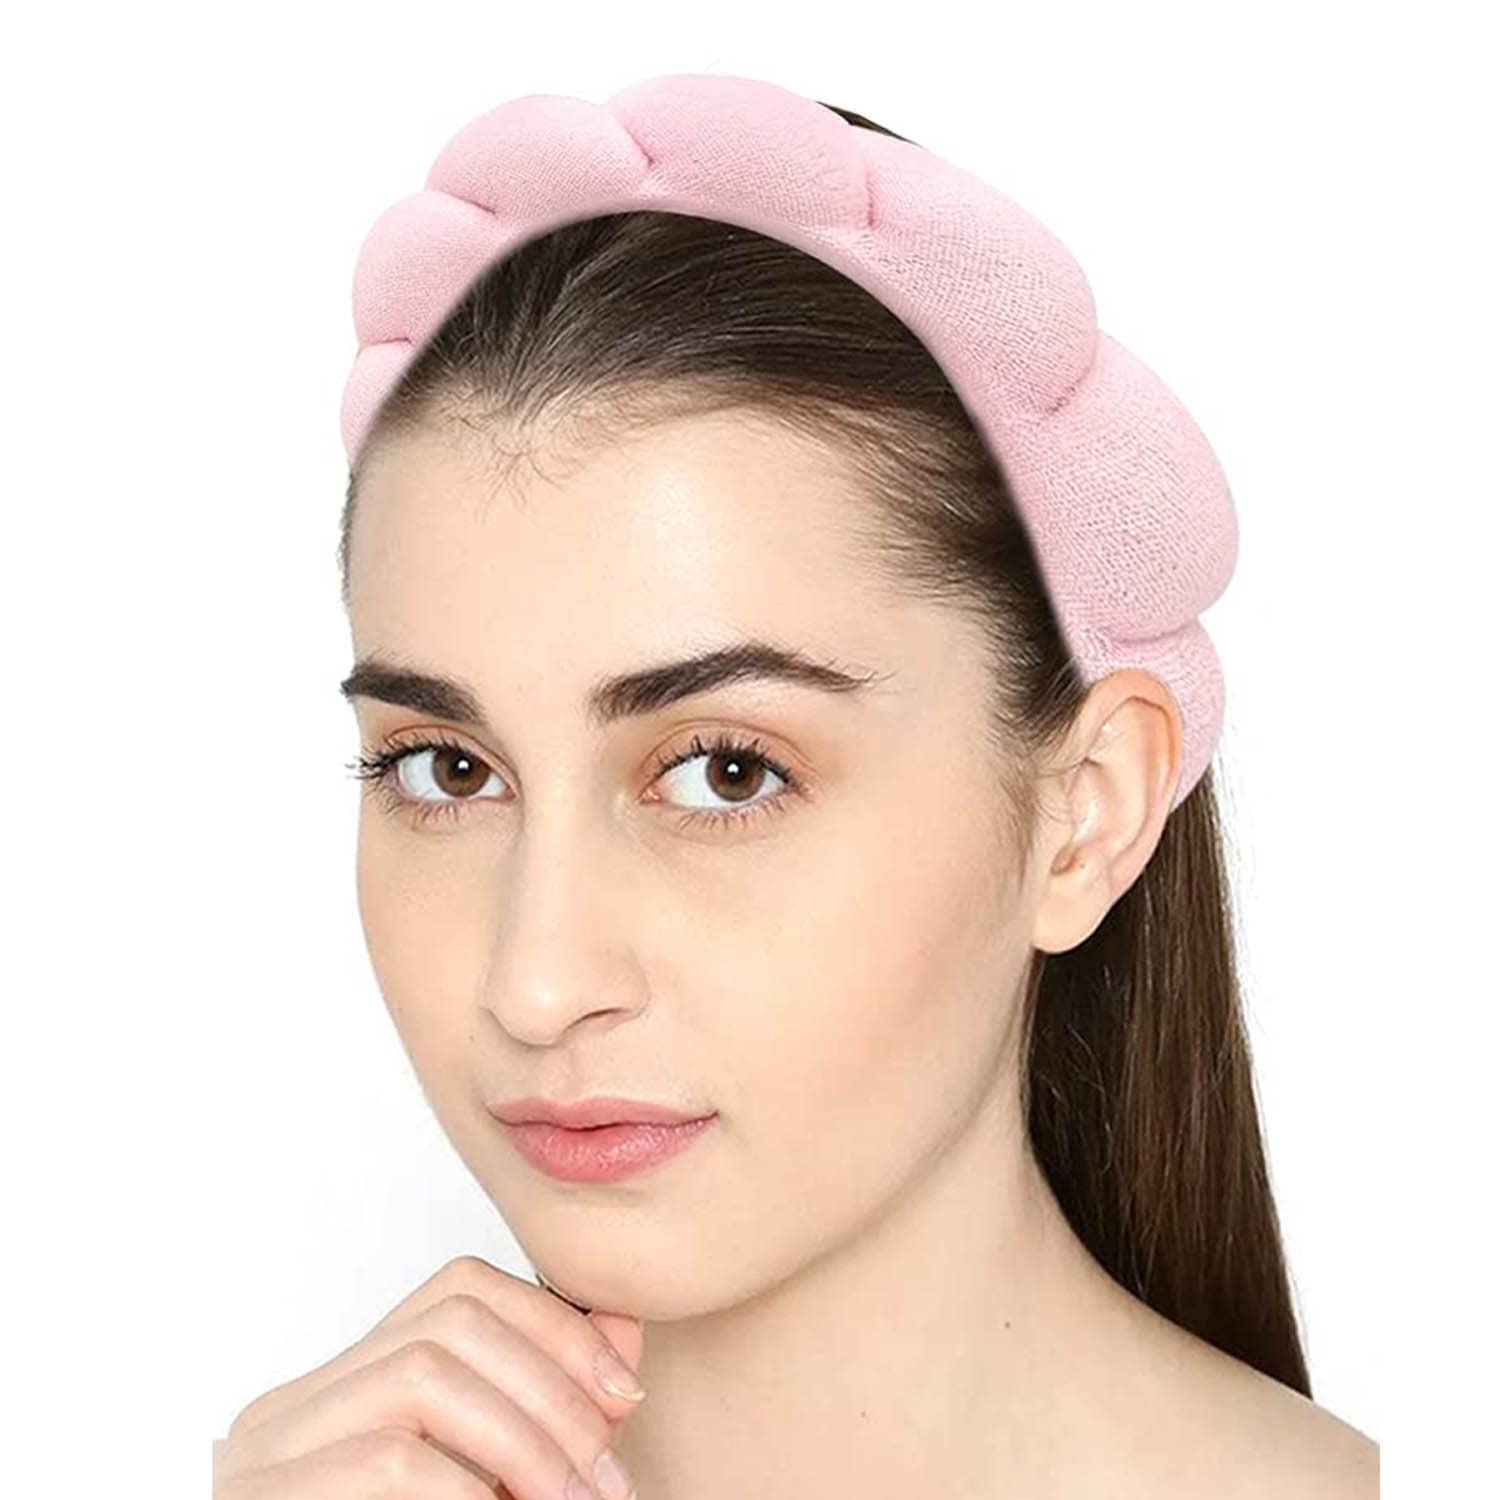 Headband Spa Women and Girls Makeup Diadema Turban Skincare Pink Polca Dot